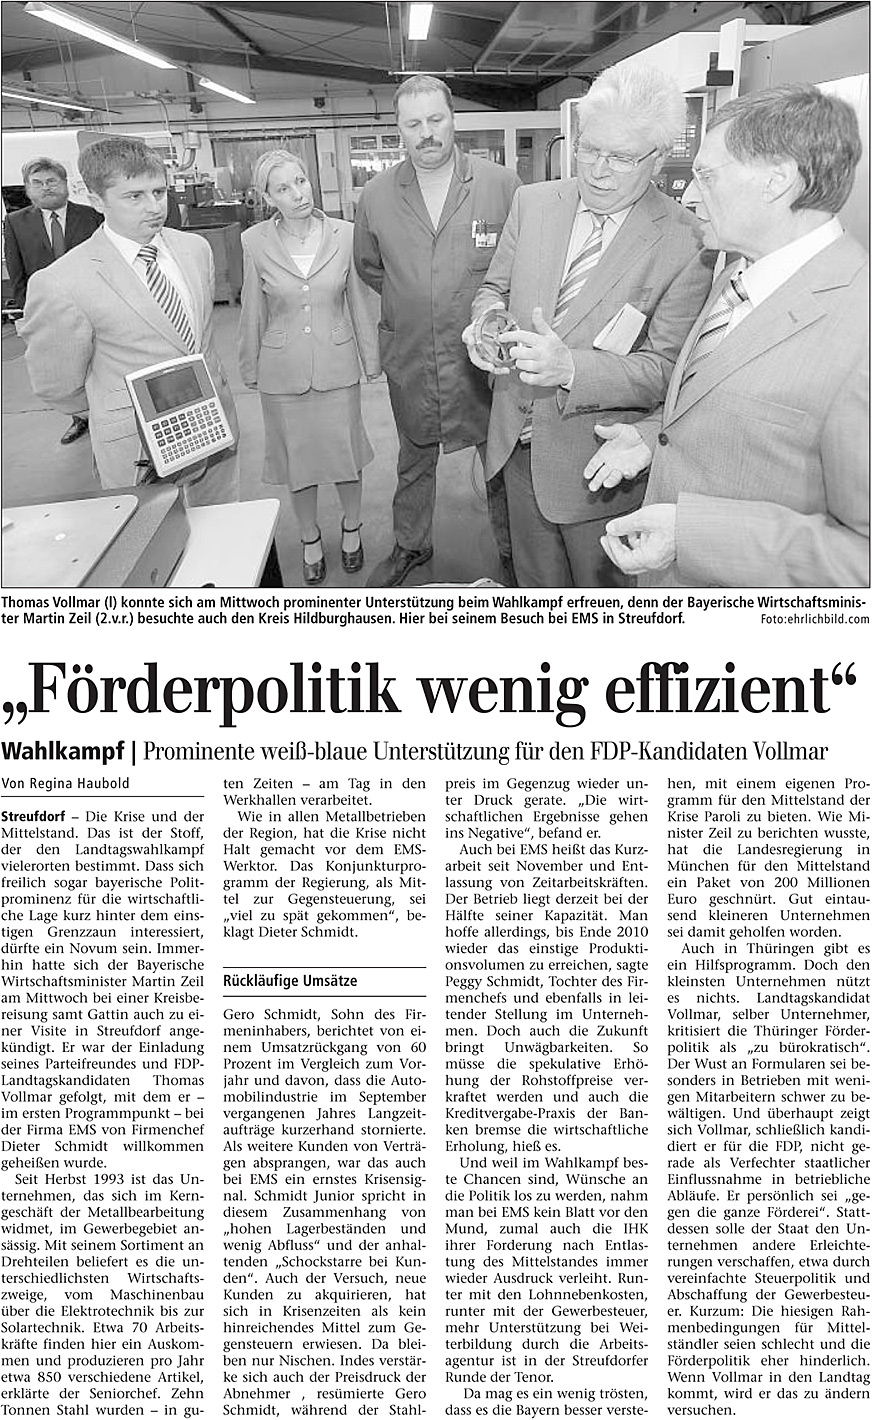 August 2009 – Zeitungsartikel in „Freies Wort“ Förderpolitik wenig effizient